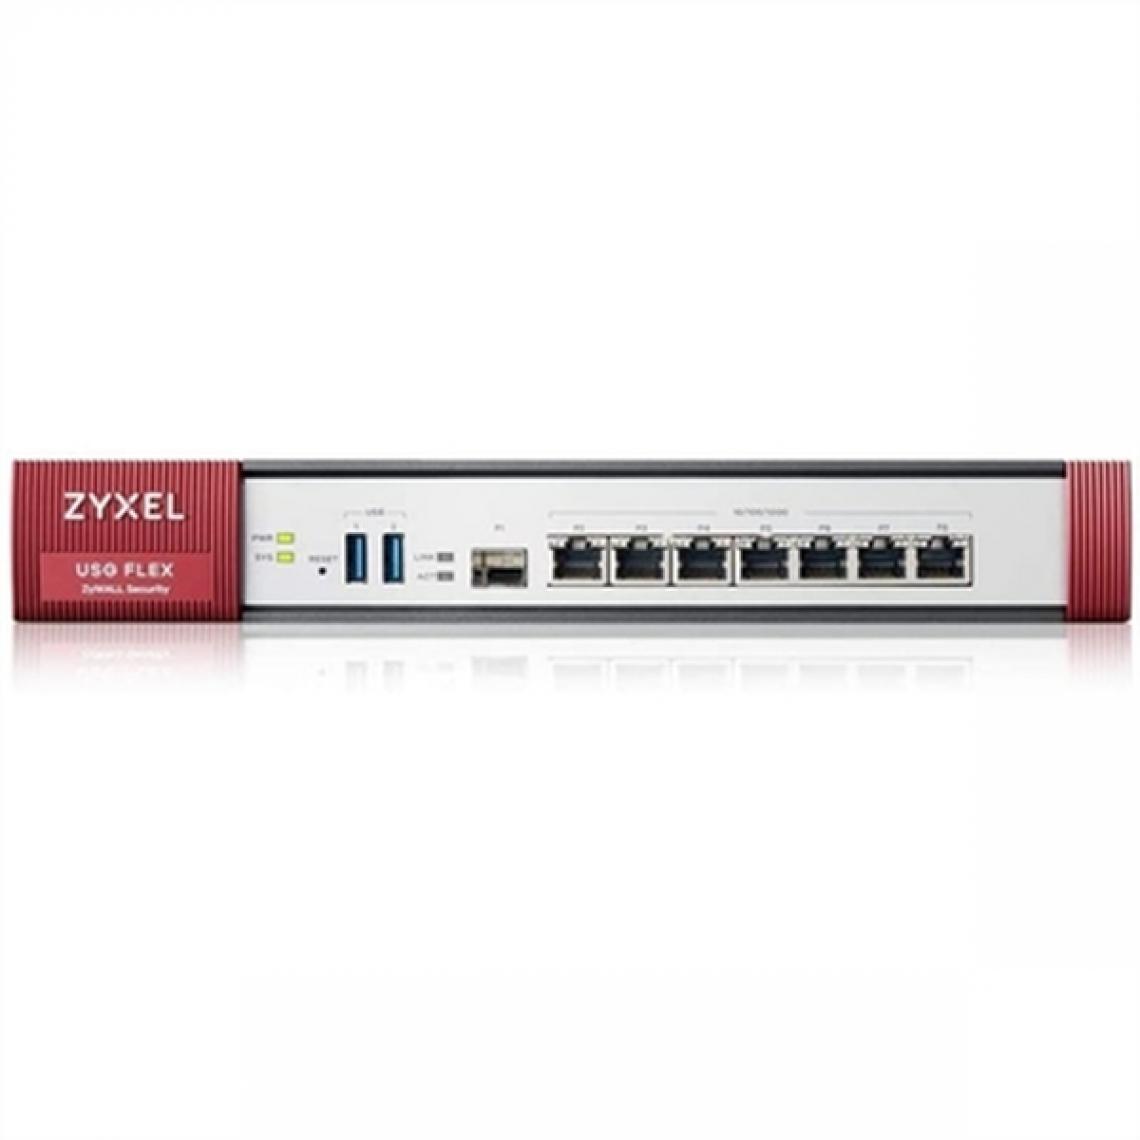 Zyxel - Firewall ZyXEL USG Flex 500 Gigabit - Modem / Routeur / Points d'accès